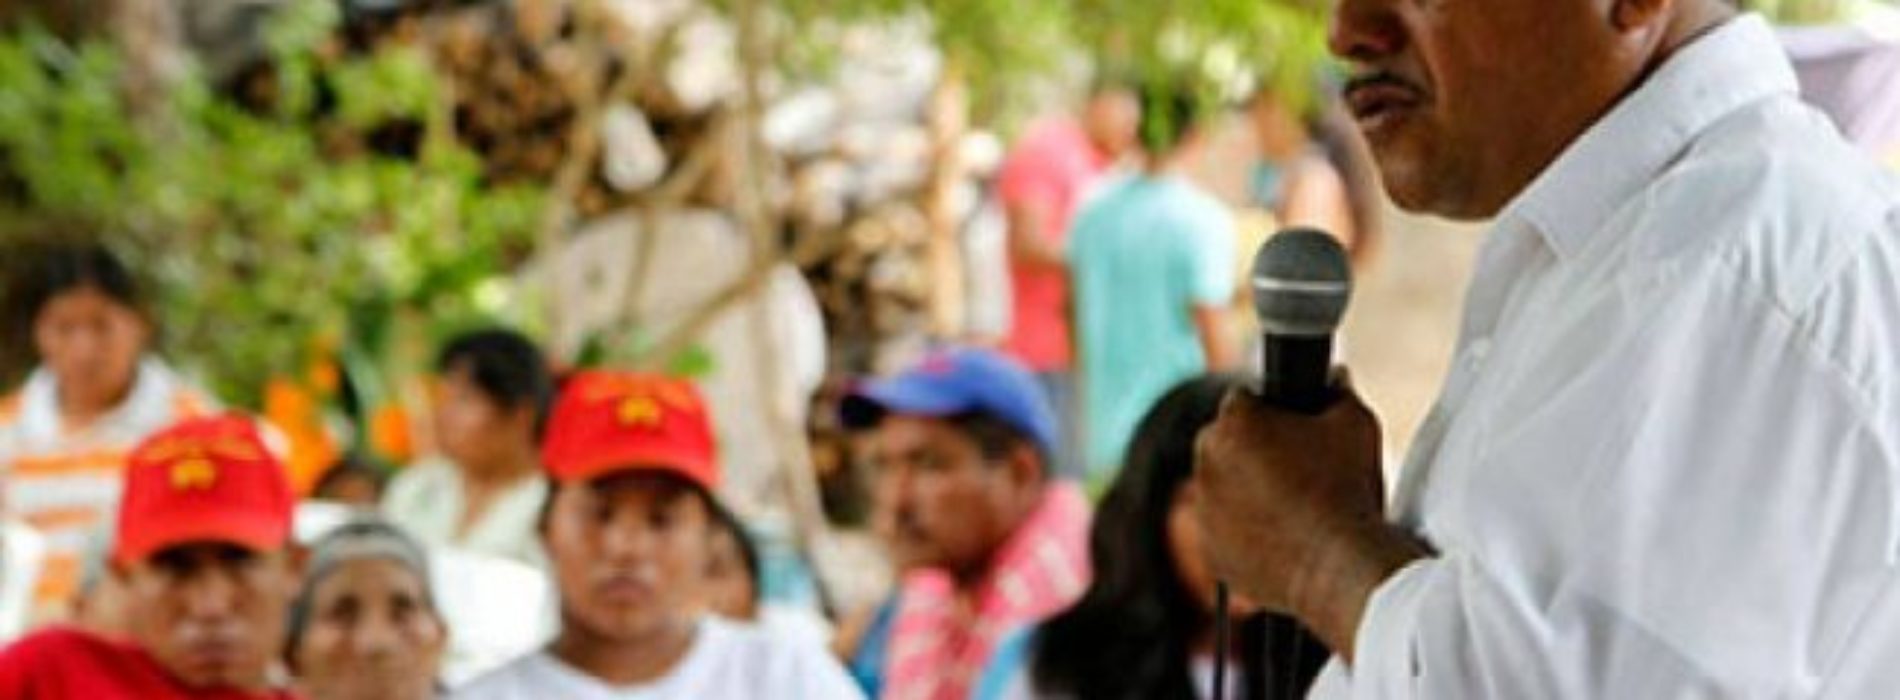 Grupo Bimbo informa sobre accidente vial donde murió alcalde
electo de Oaxaca